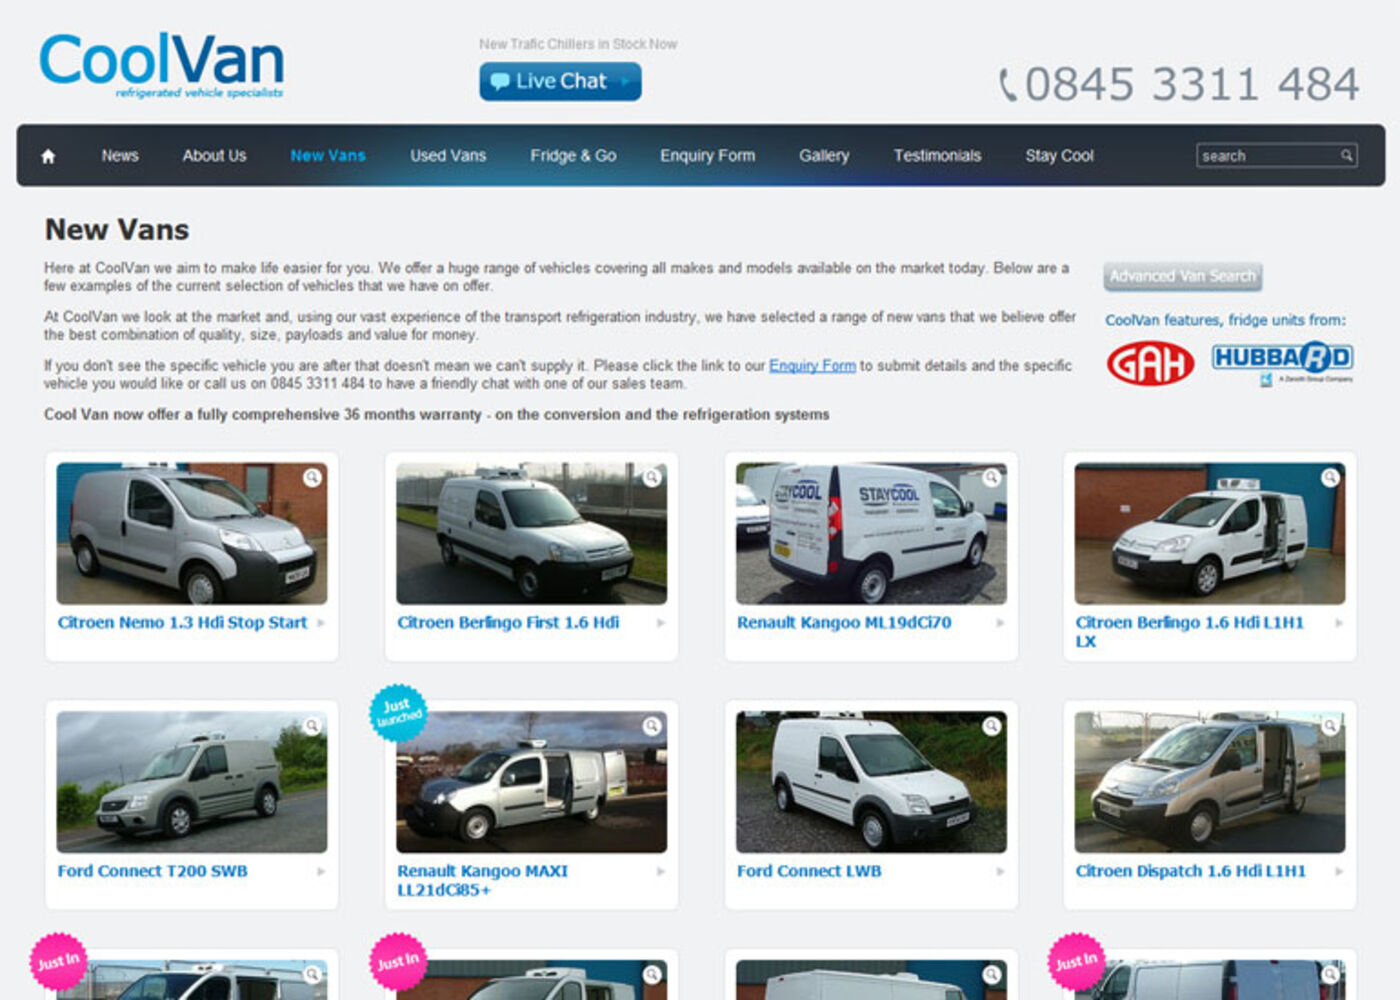 Cool Van New Vans - Cool Vans